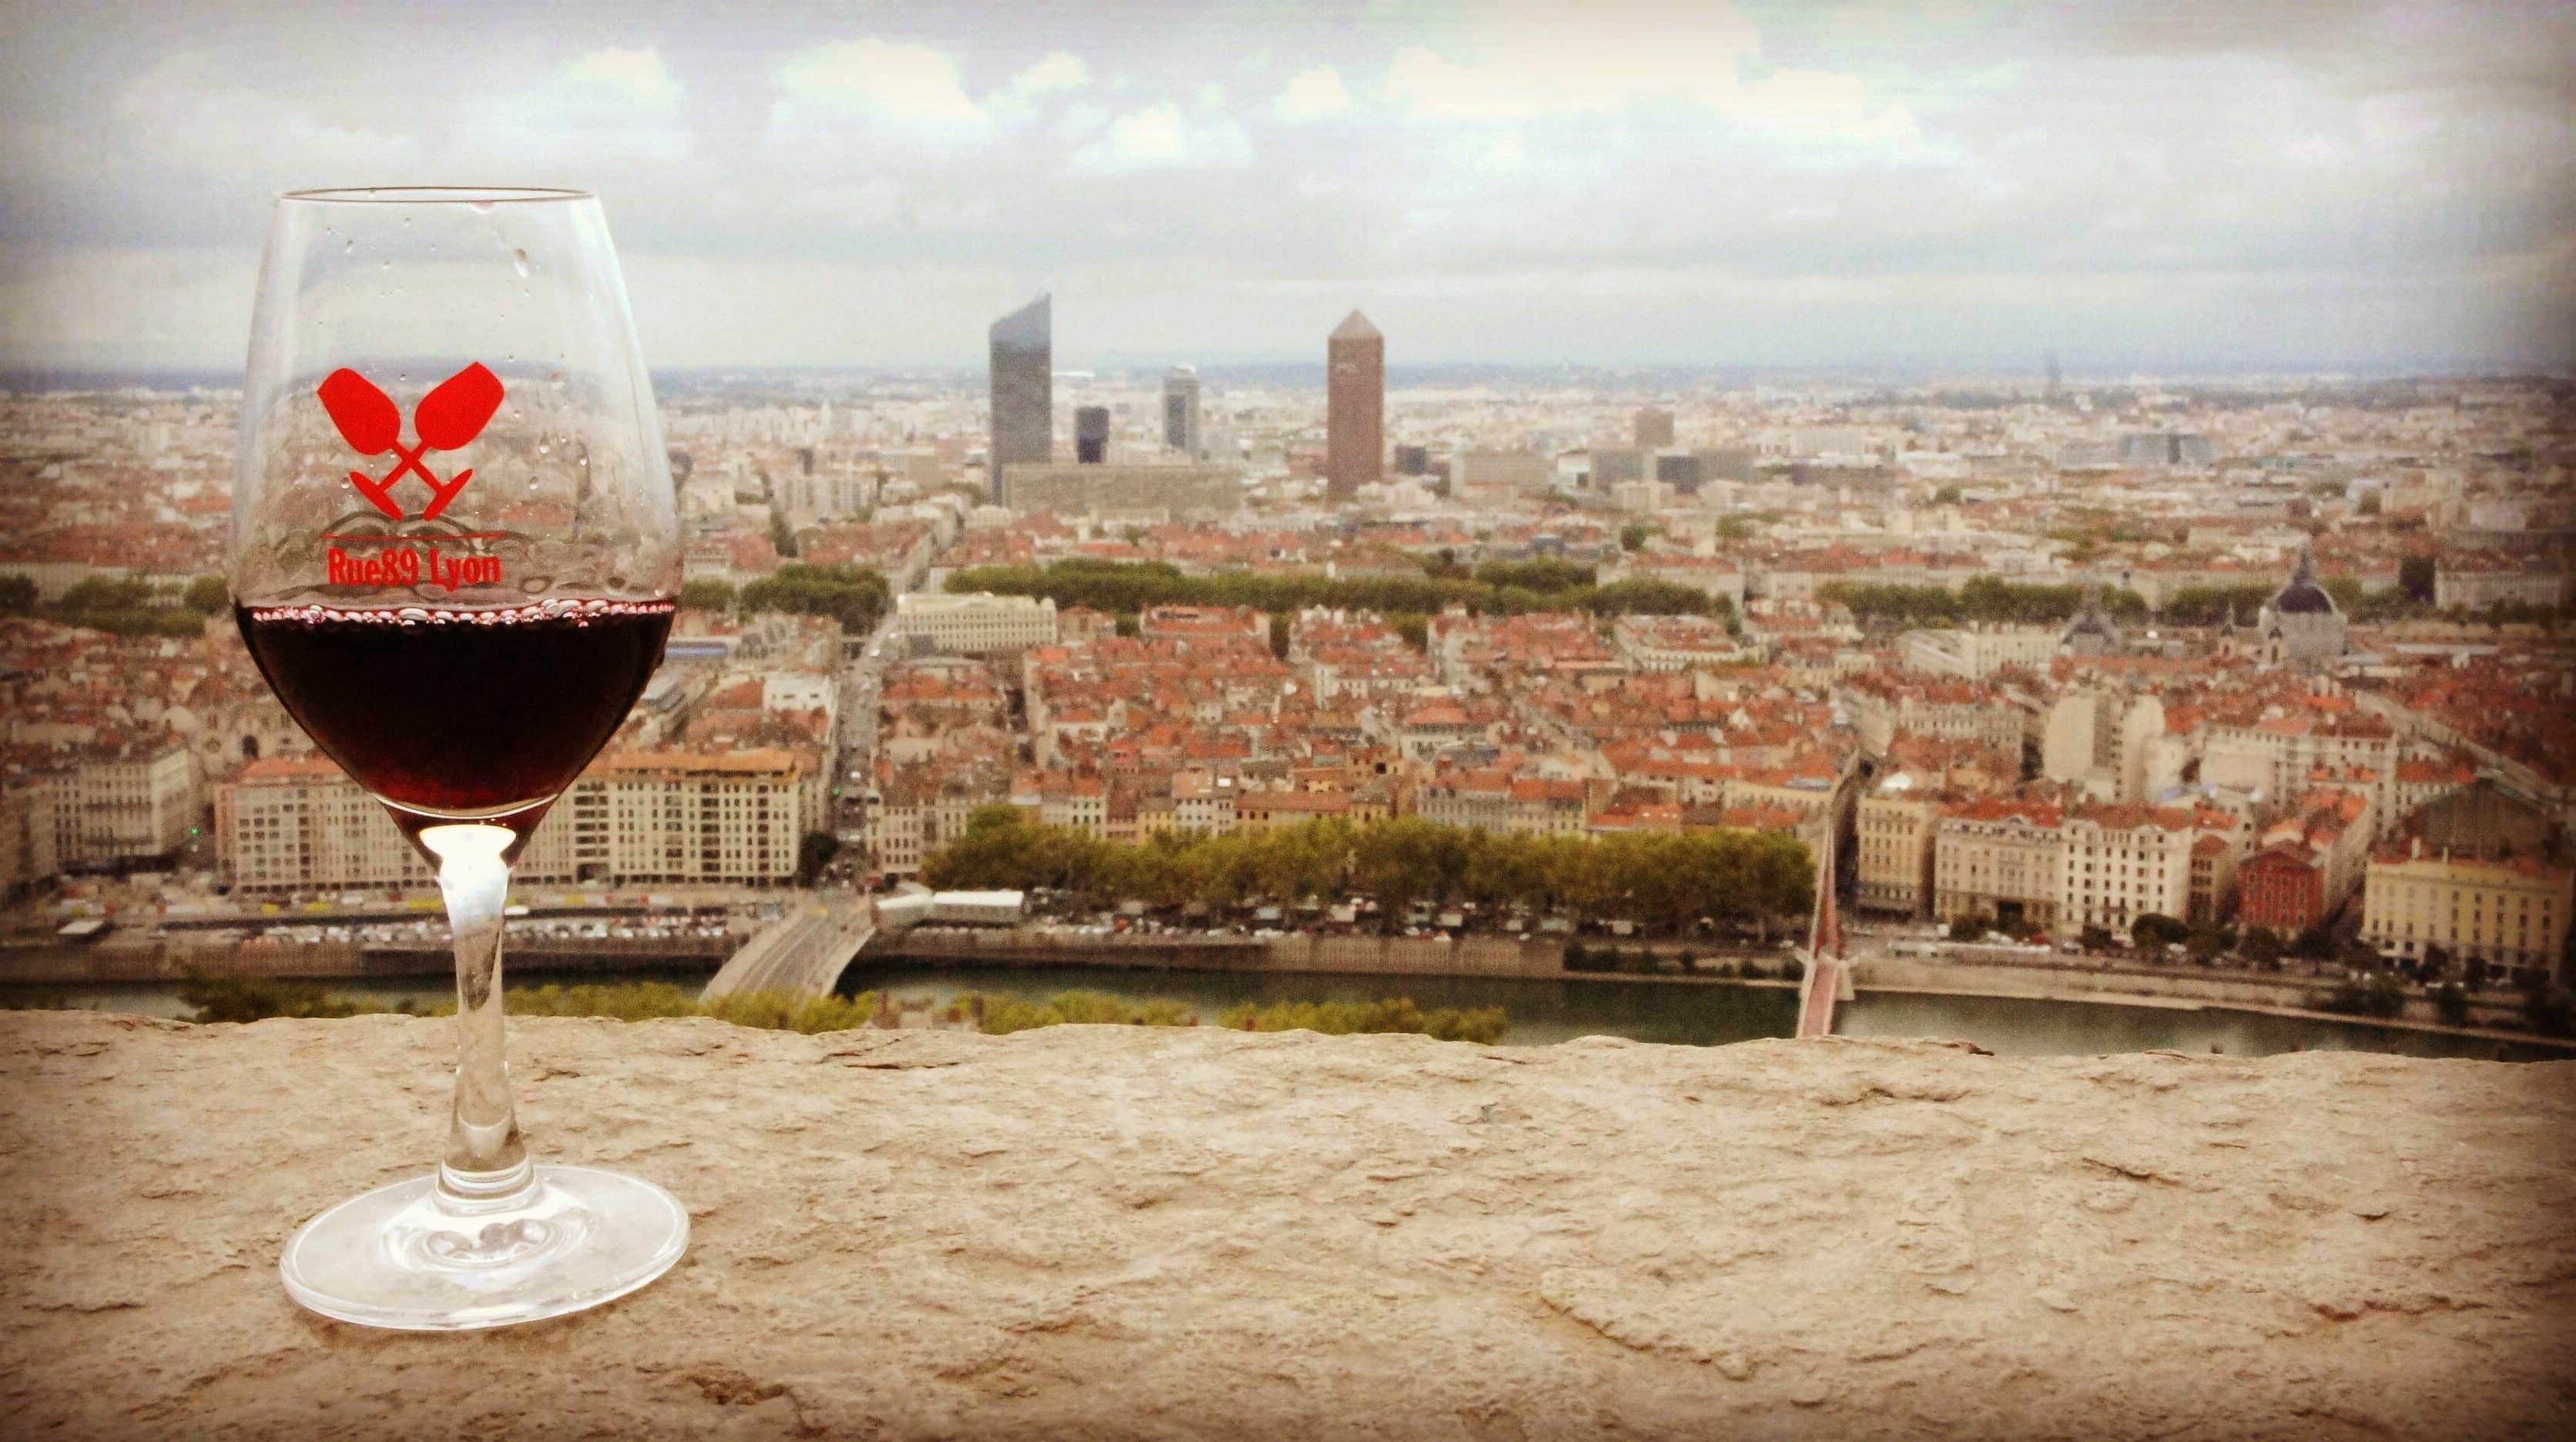 Le verre du salon des vins Rue89Lyon surplombant Lyon depuis la colline de Fourvière. Photo BE/Rue89Lyon